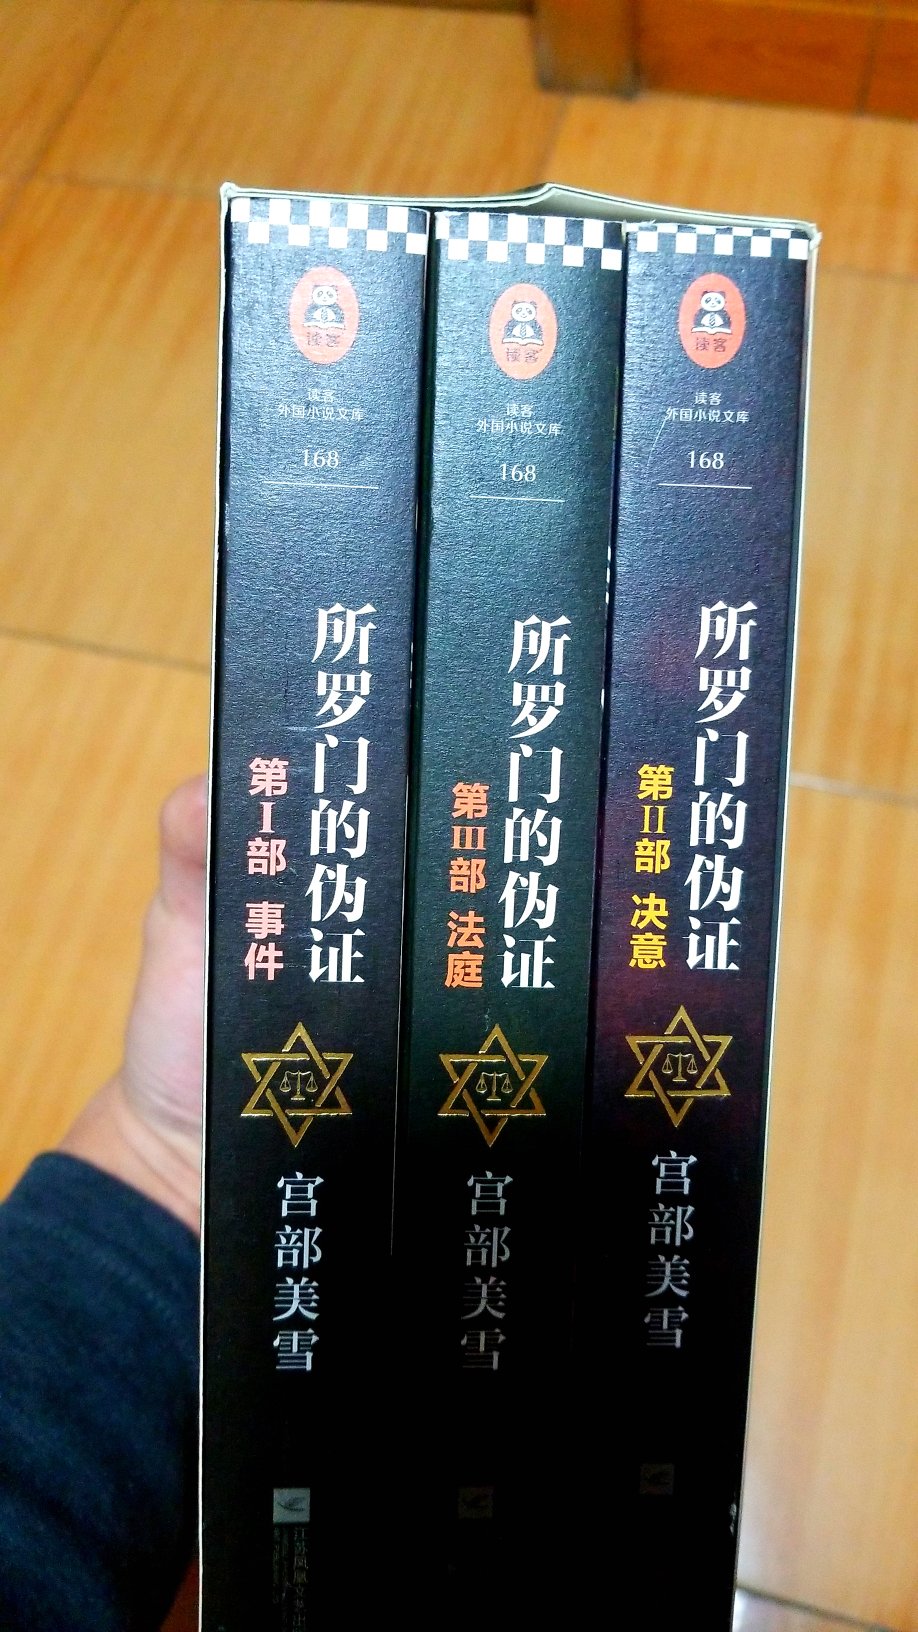 日本的悬疑一直喜欢东野圭*的作品，这次读一下宫部美雪?。盒子上部有一点挤压变形，好在书没事。